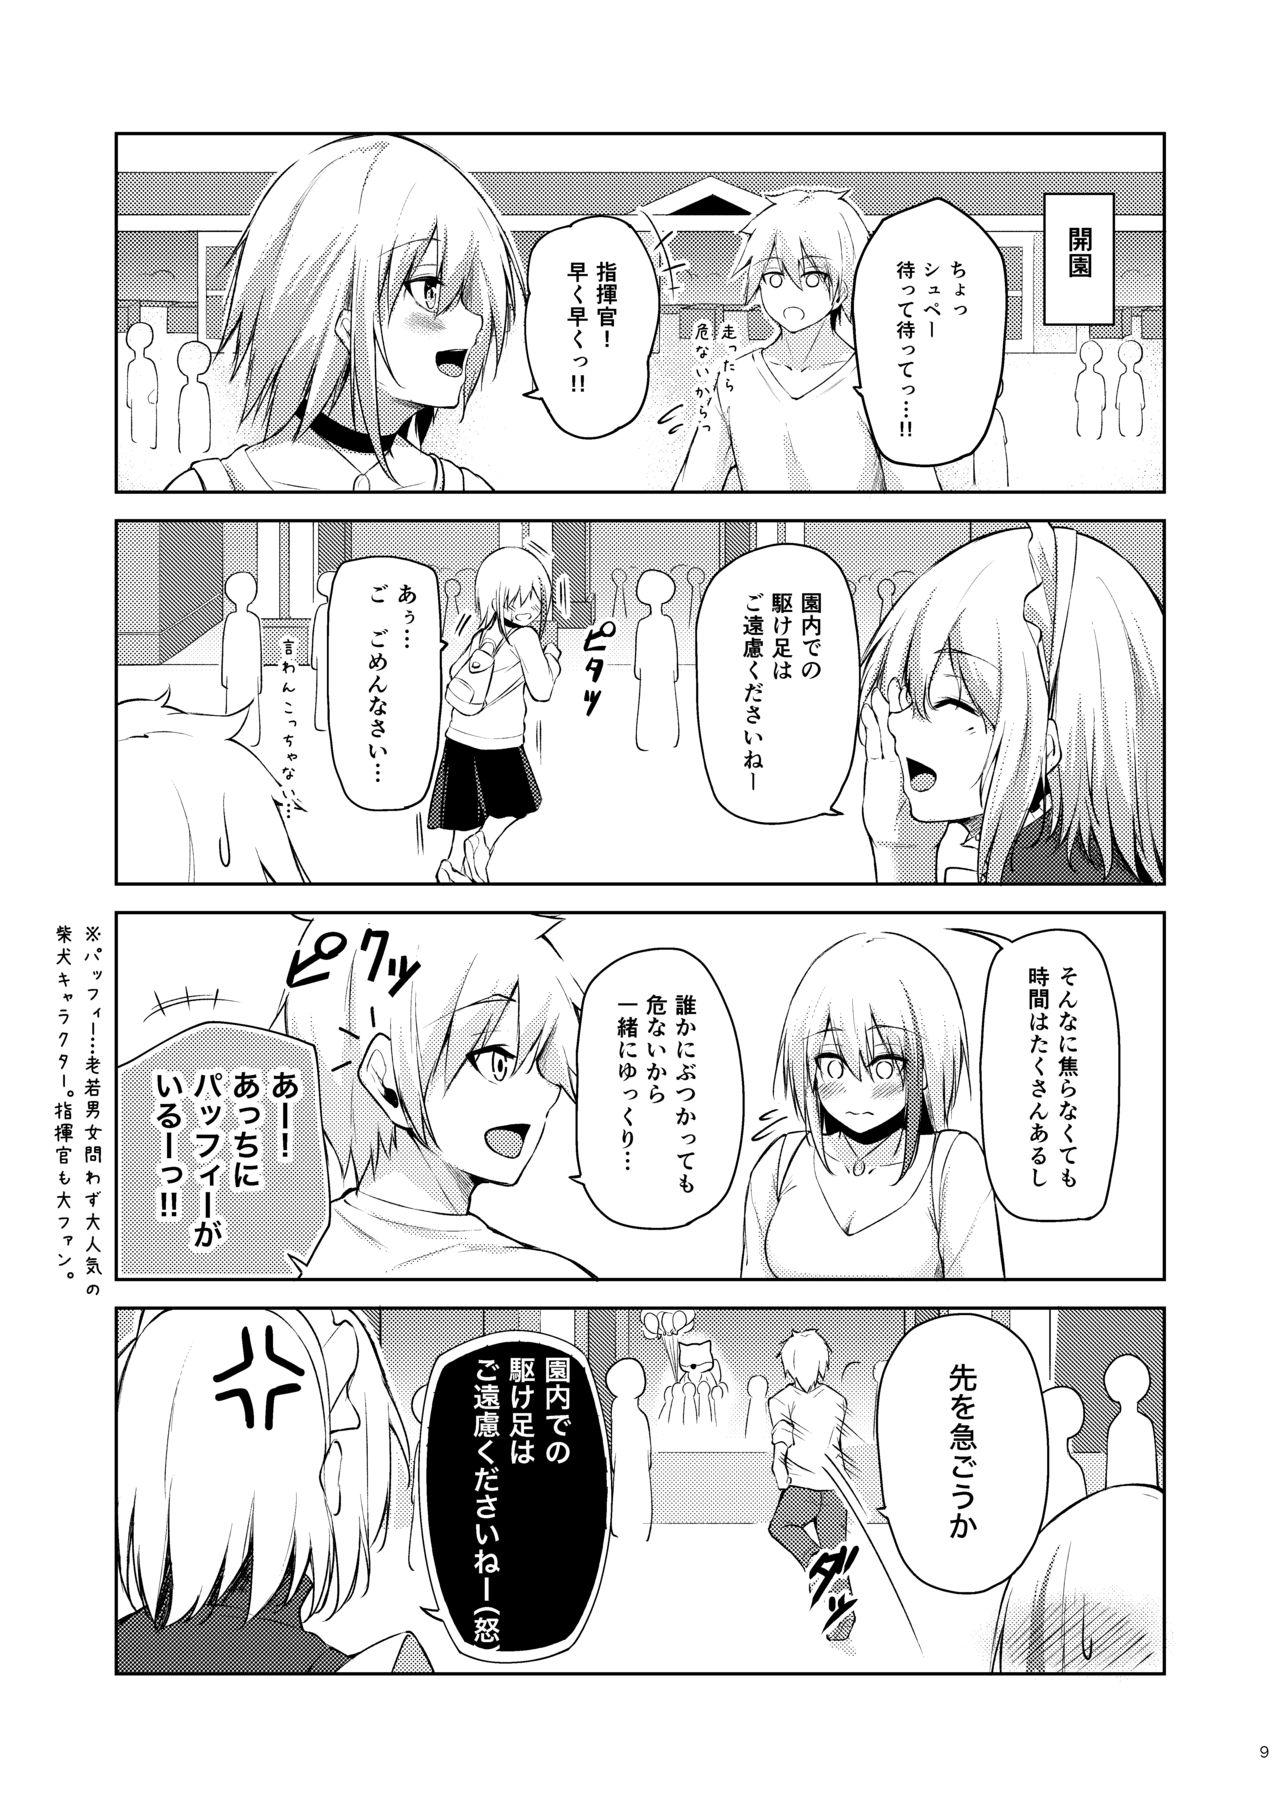 Orgasmo Afureru Kurai, Kimi ga Suki. Shi - Azur lane Shorts - Page 8